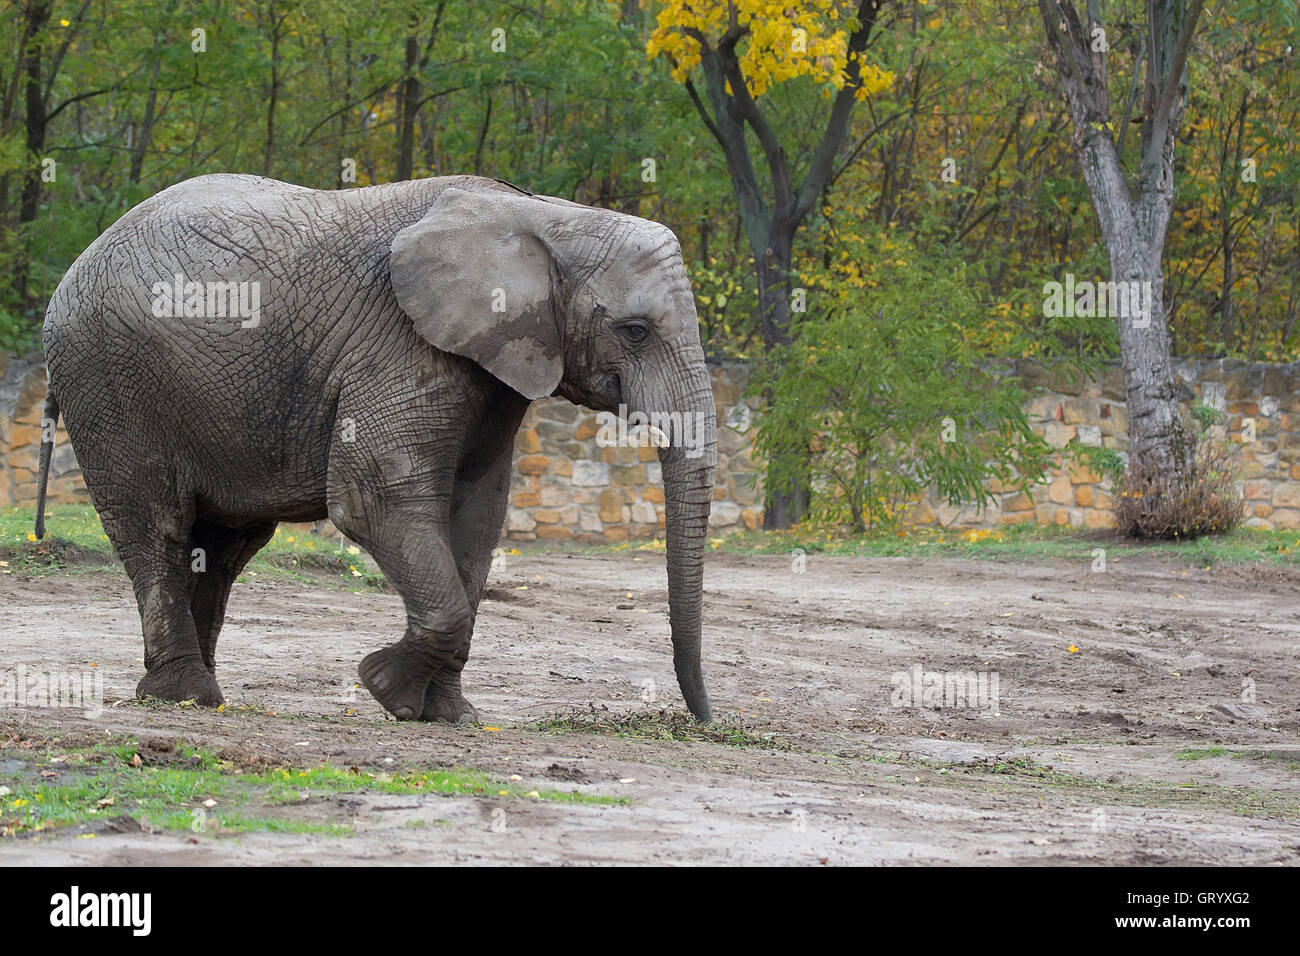 Elephant in the wild Stock Photo